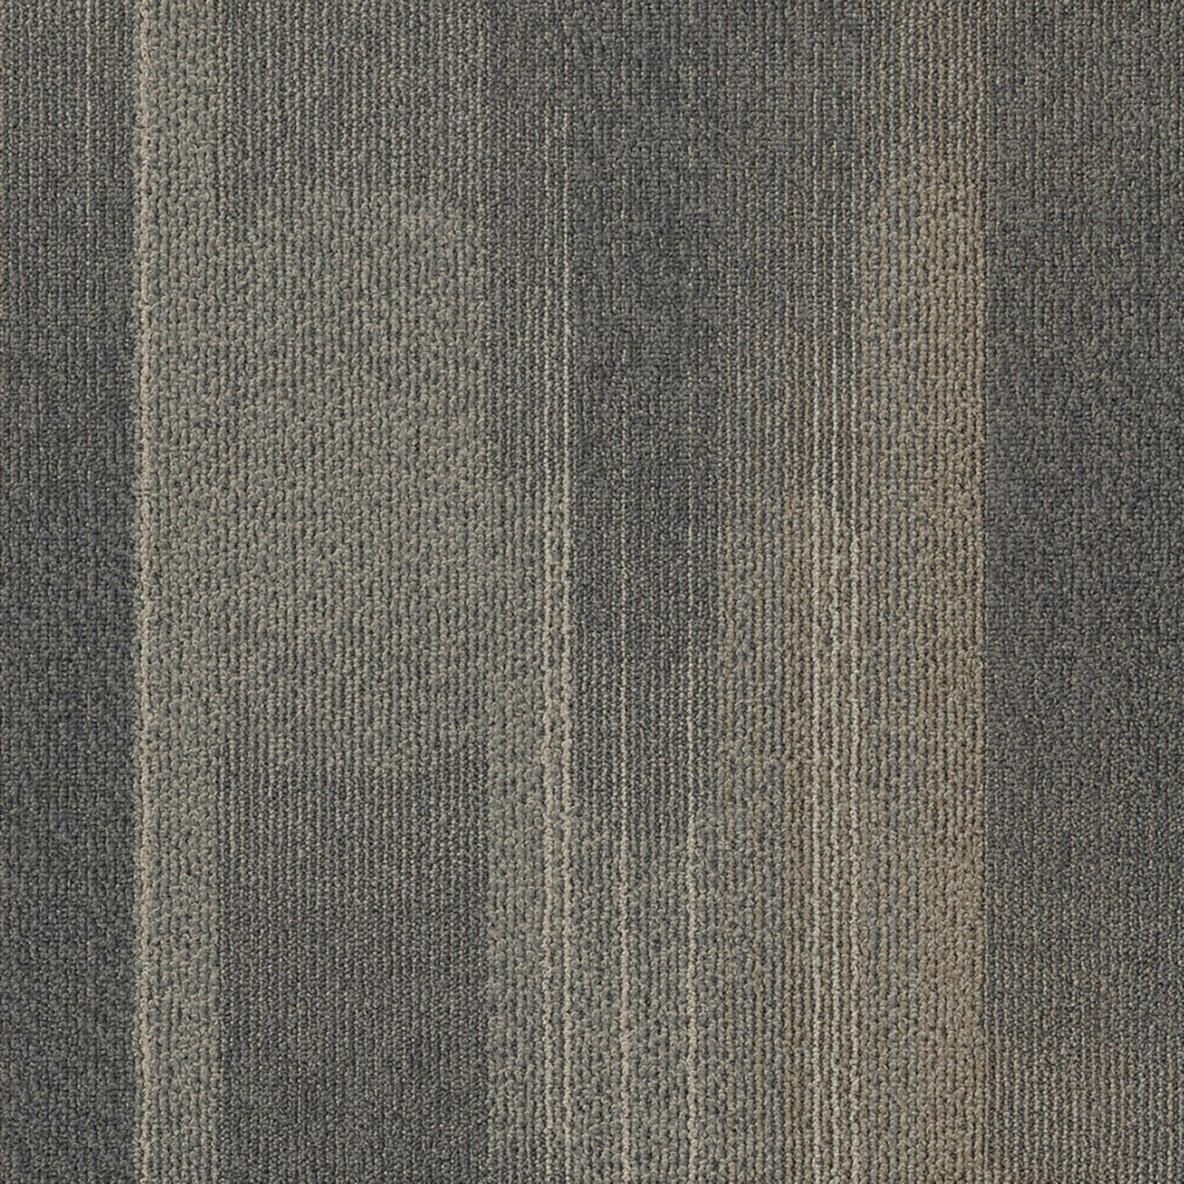 Diversions Commercial Carpet Tile .42 Inch x 50x50 cm per Tile Earthtone color close up